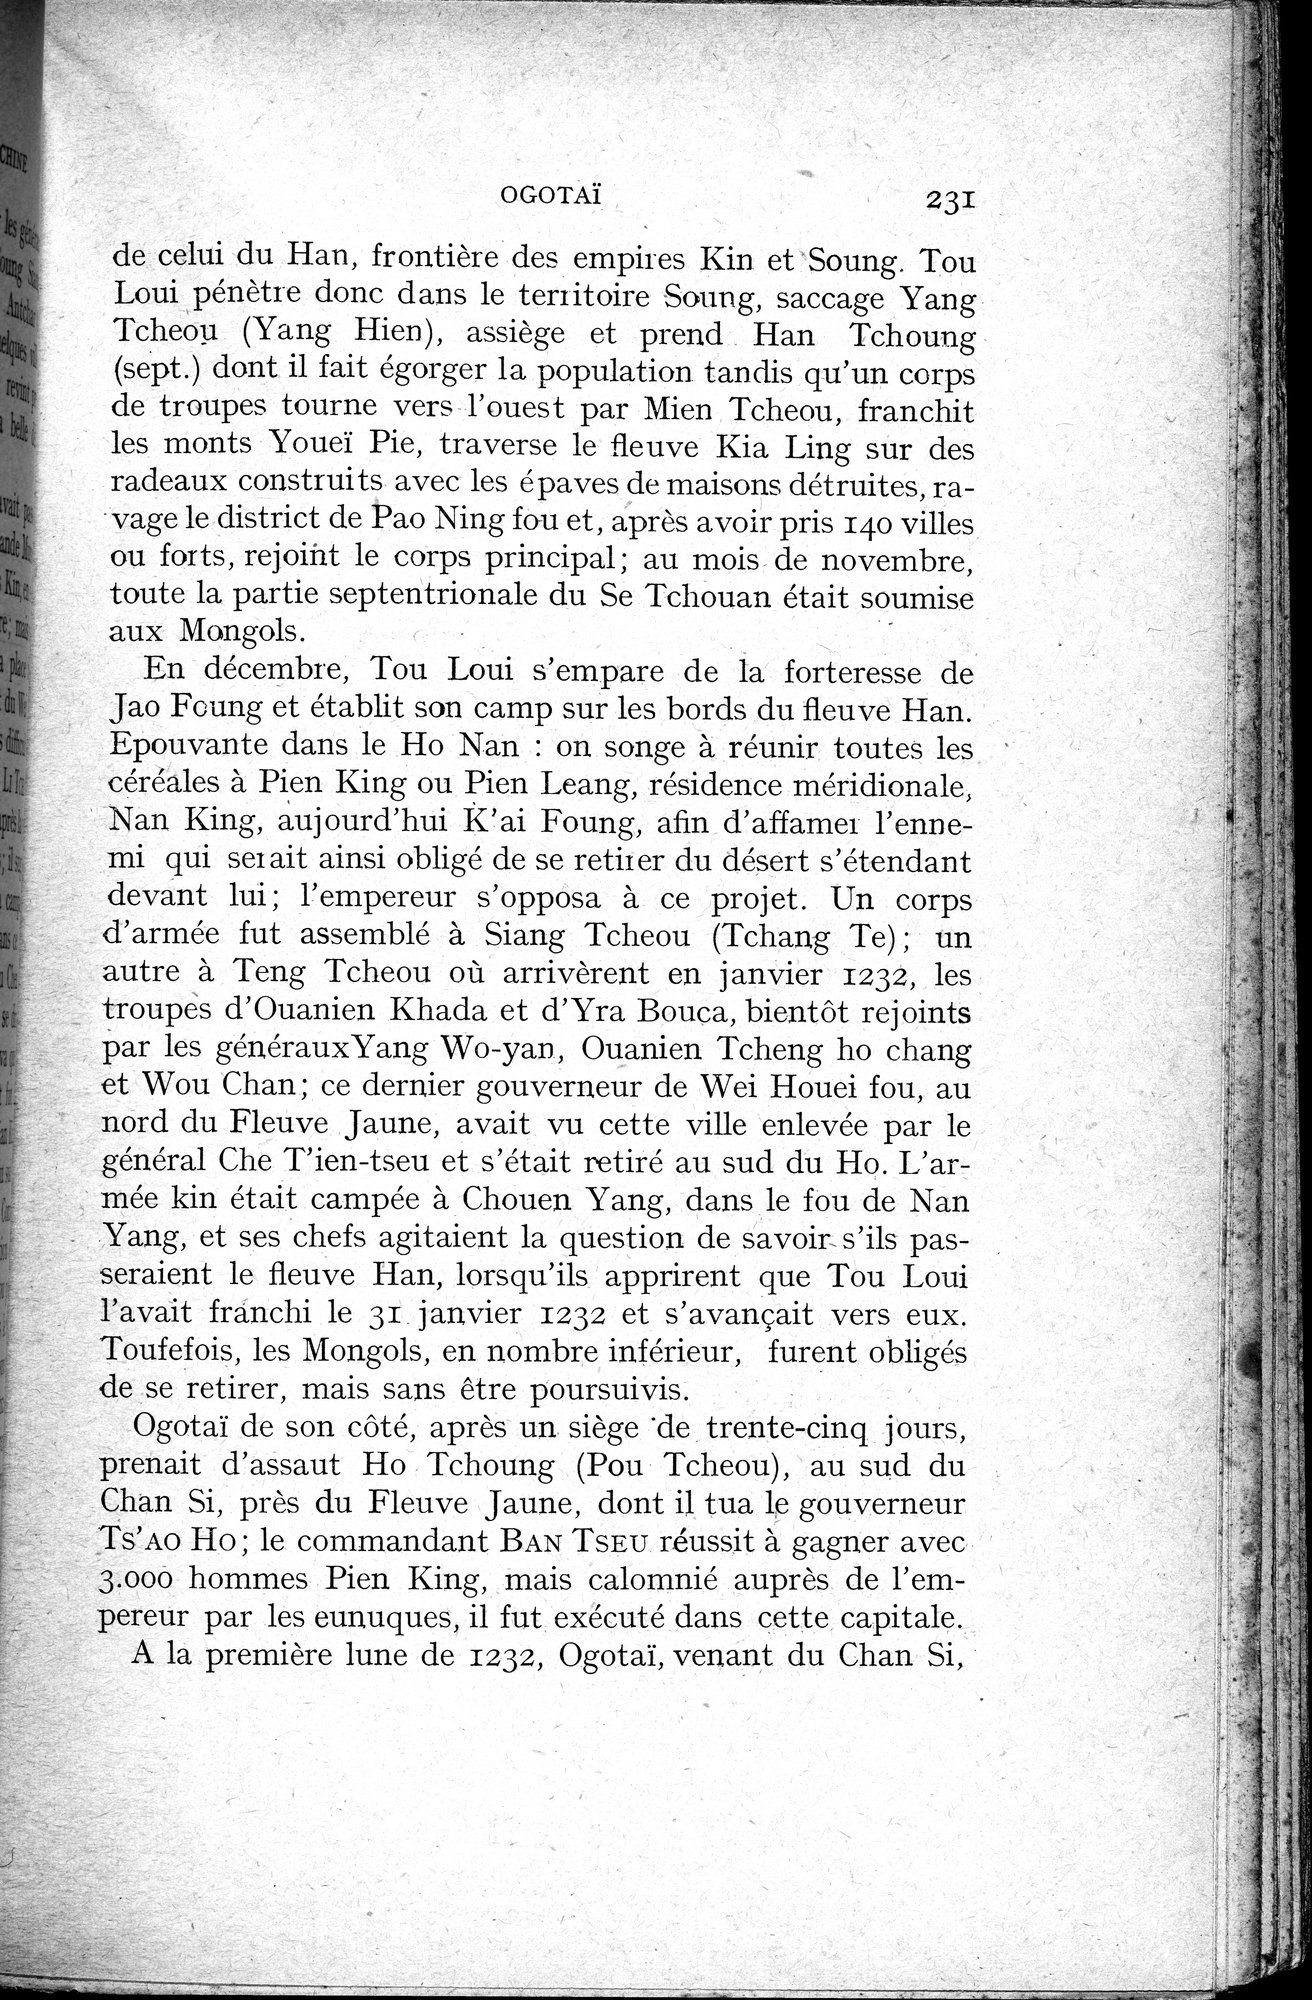 Histoire Générale de la Chine : vol.2 / Page 233 (Grayscale High Resolution Image)